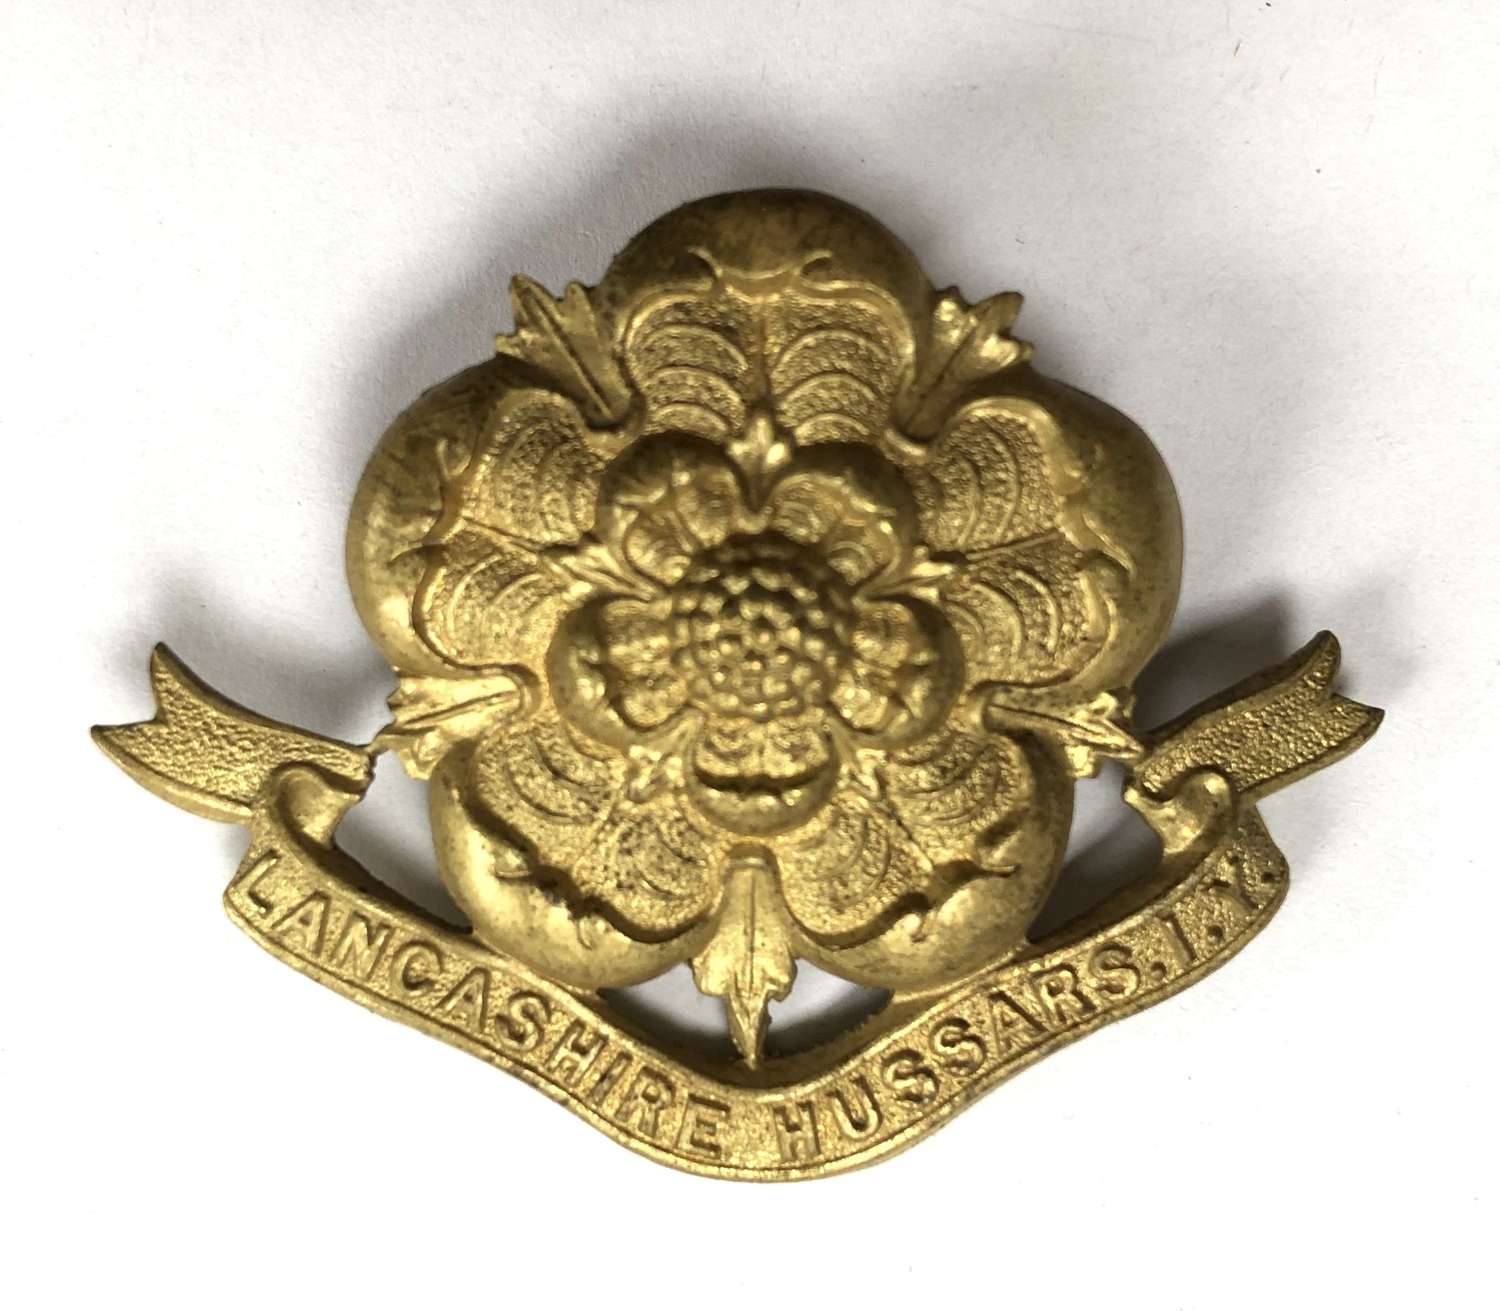 Lancashire Hussars Imperial Yeomanry Edwardian cap badge c1901-08